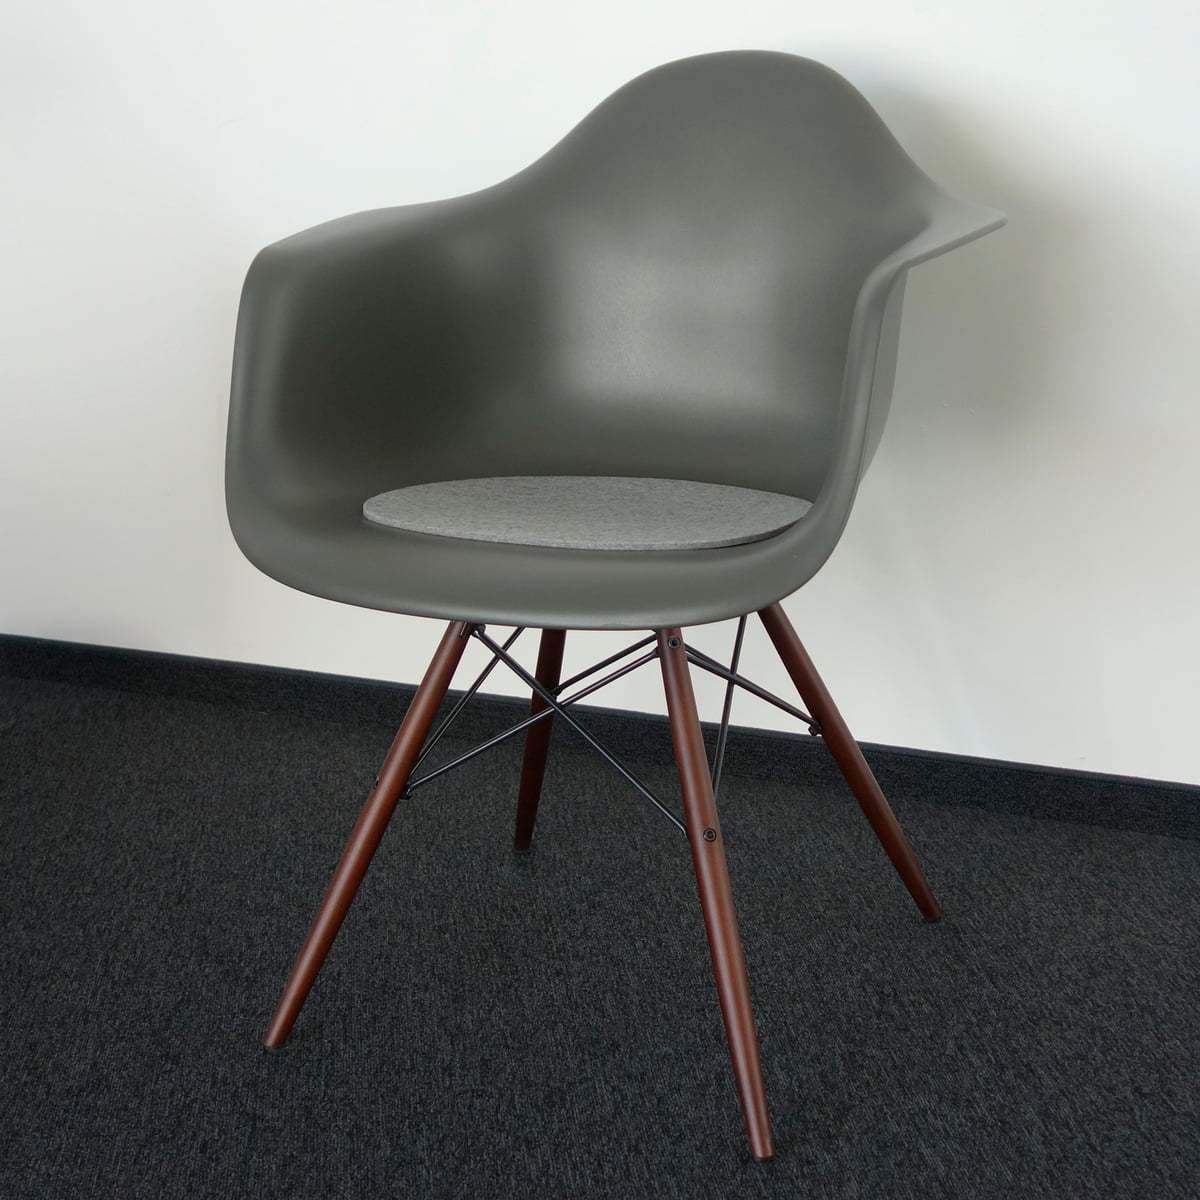 Seat Cushion Felt Cushion For Eames Plastic Arm Chairs (DAR DAW), DAX Parkhaus  Berlin